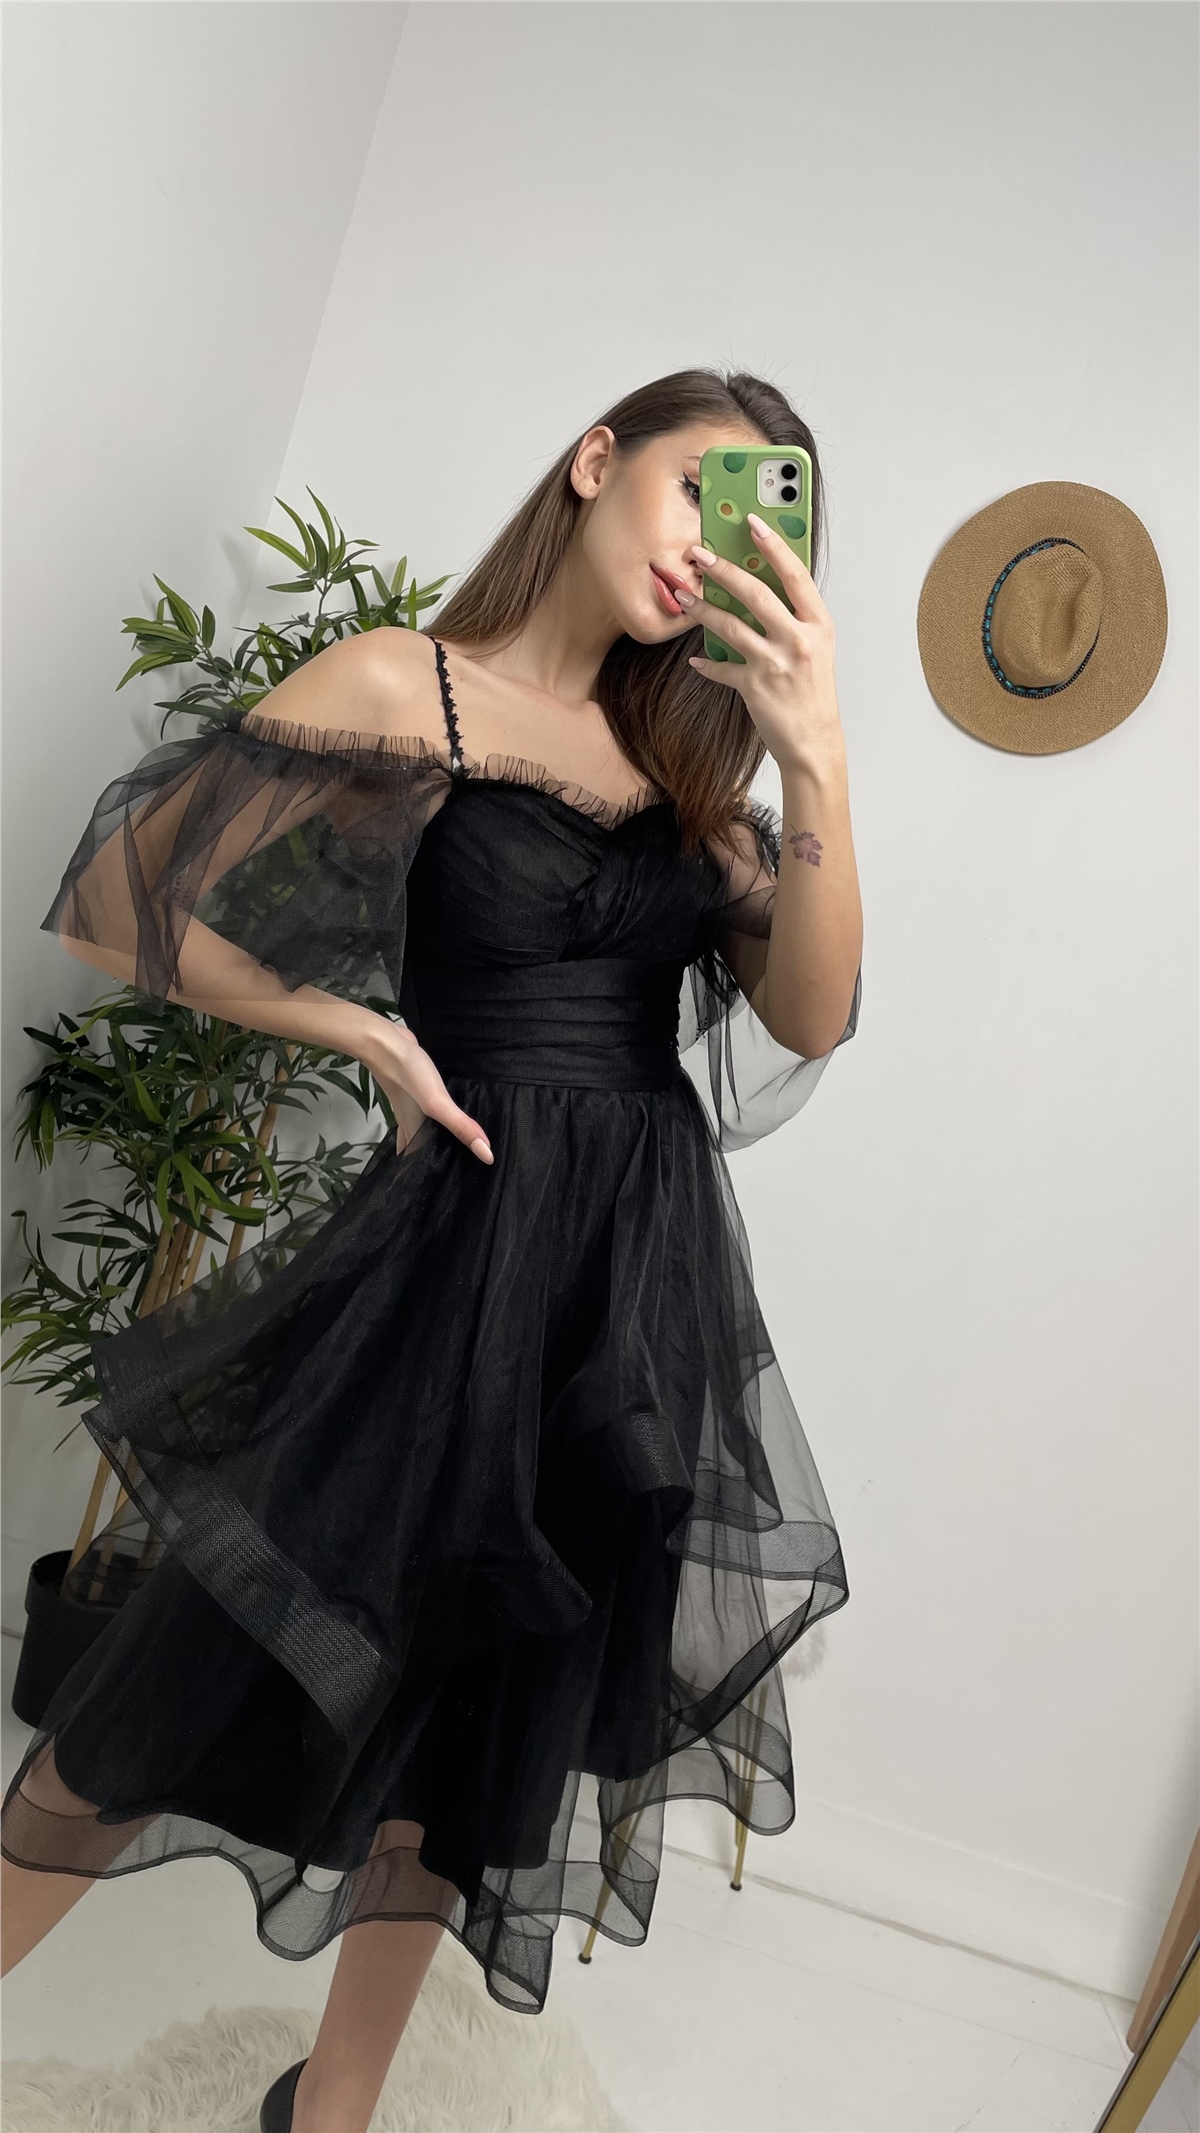 Siyah İp Askılı Eteği Kat Kat Tül Abiye Elbise - Moda Kapımda İle Kapınızda!